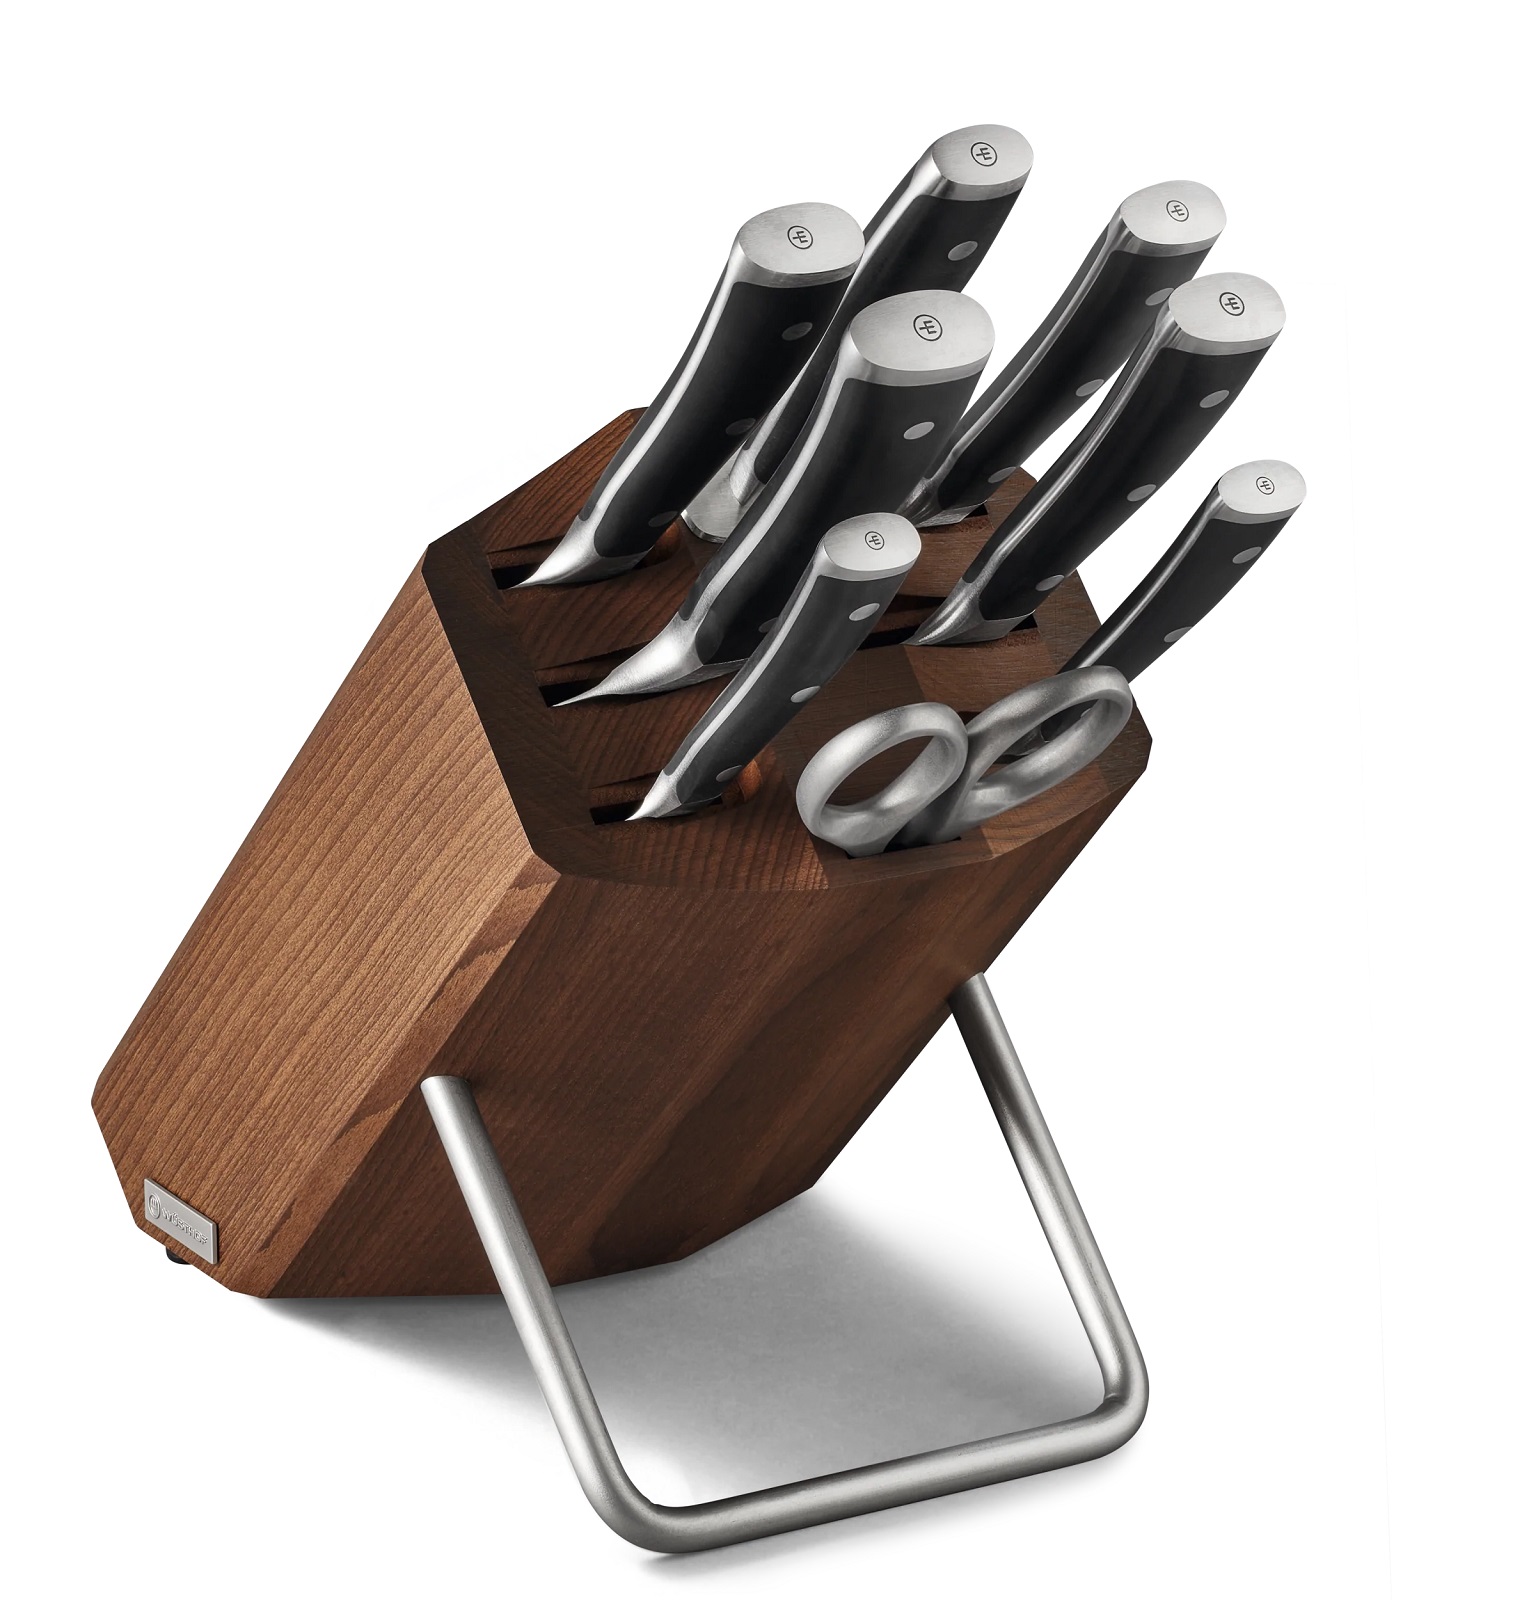 Ceppo coltelli da cucina con 14 coltelli 32x15xh25 cm